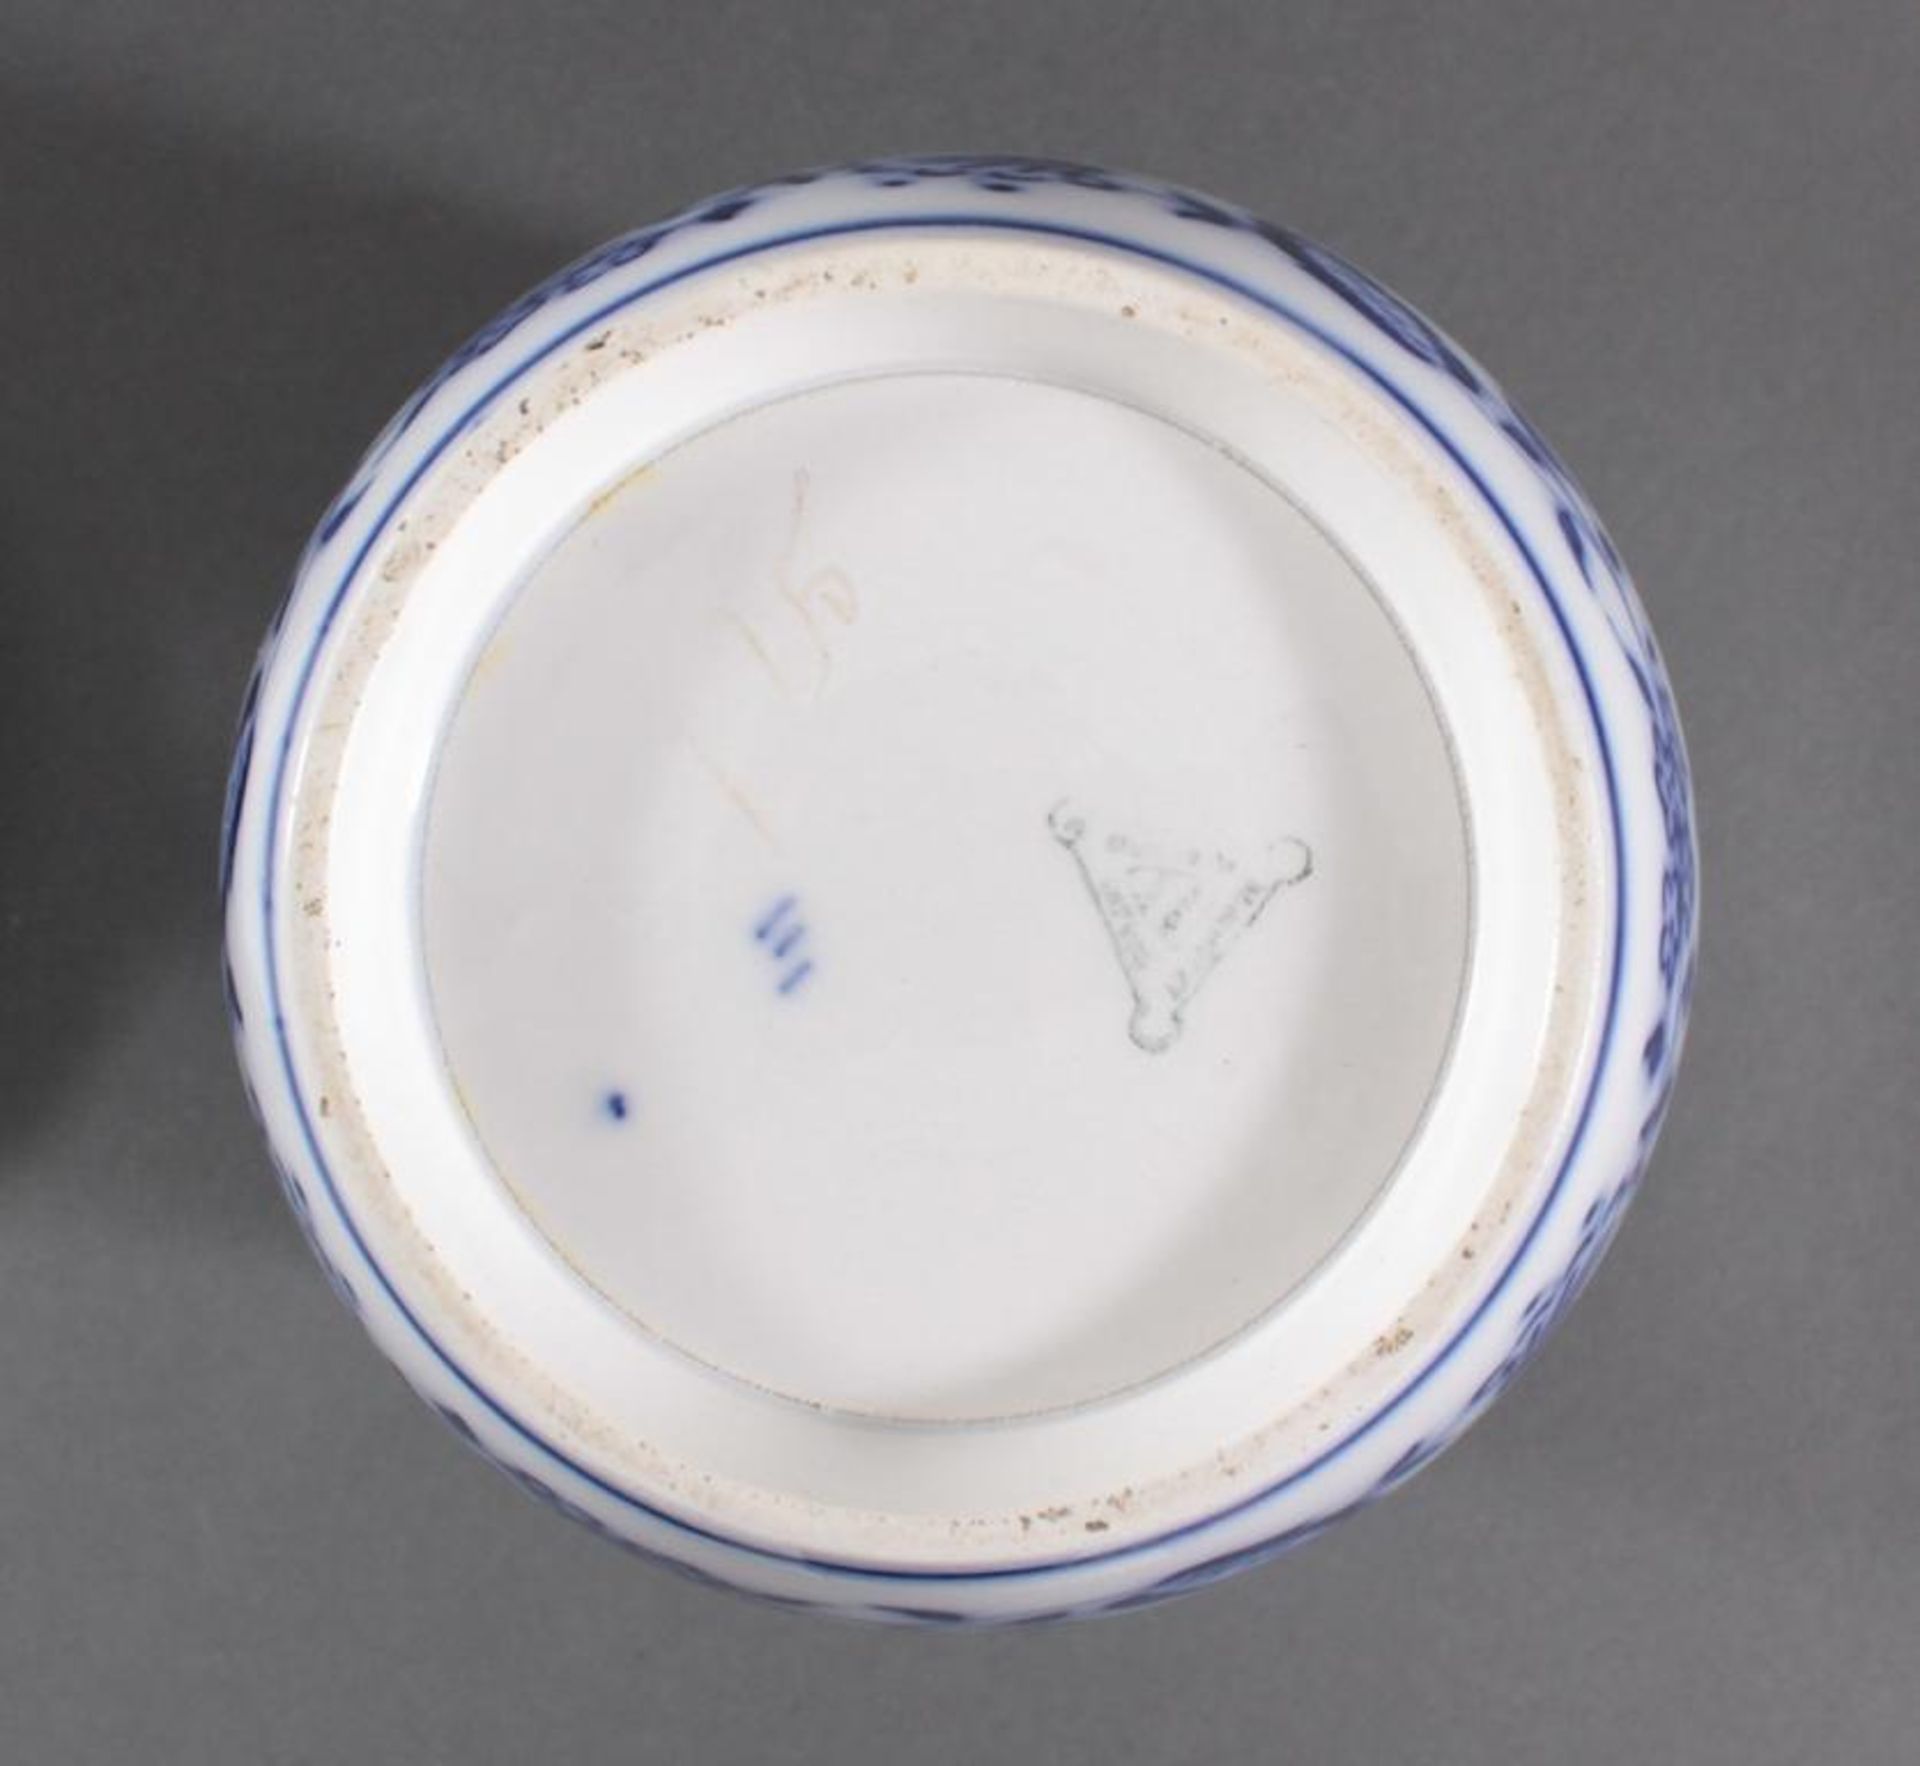 5 Vorratsgefäße, WächtersbachKüchengefäße, Keramik mit blauem Zwiebelmuster und Aufschriften, - Image 3 of 3